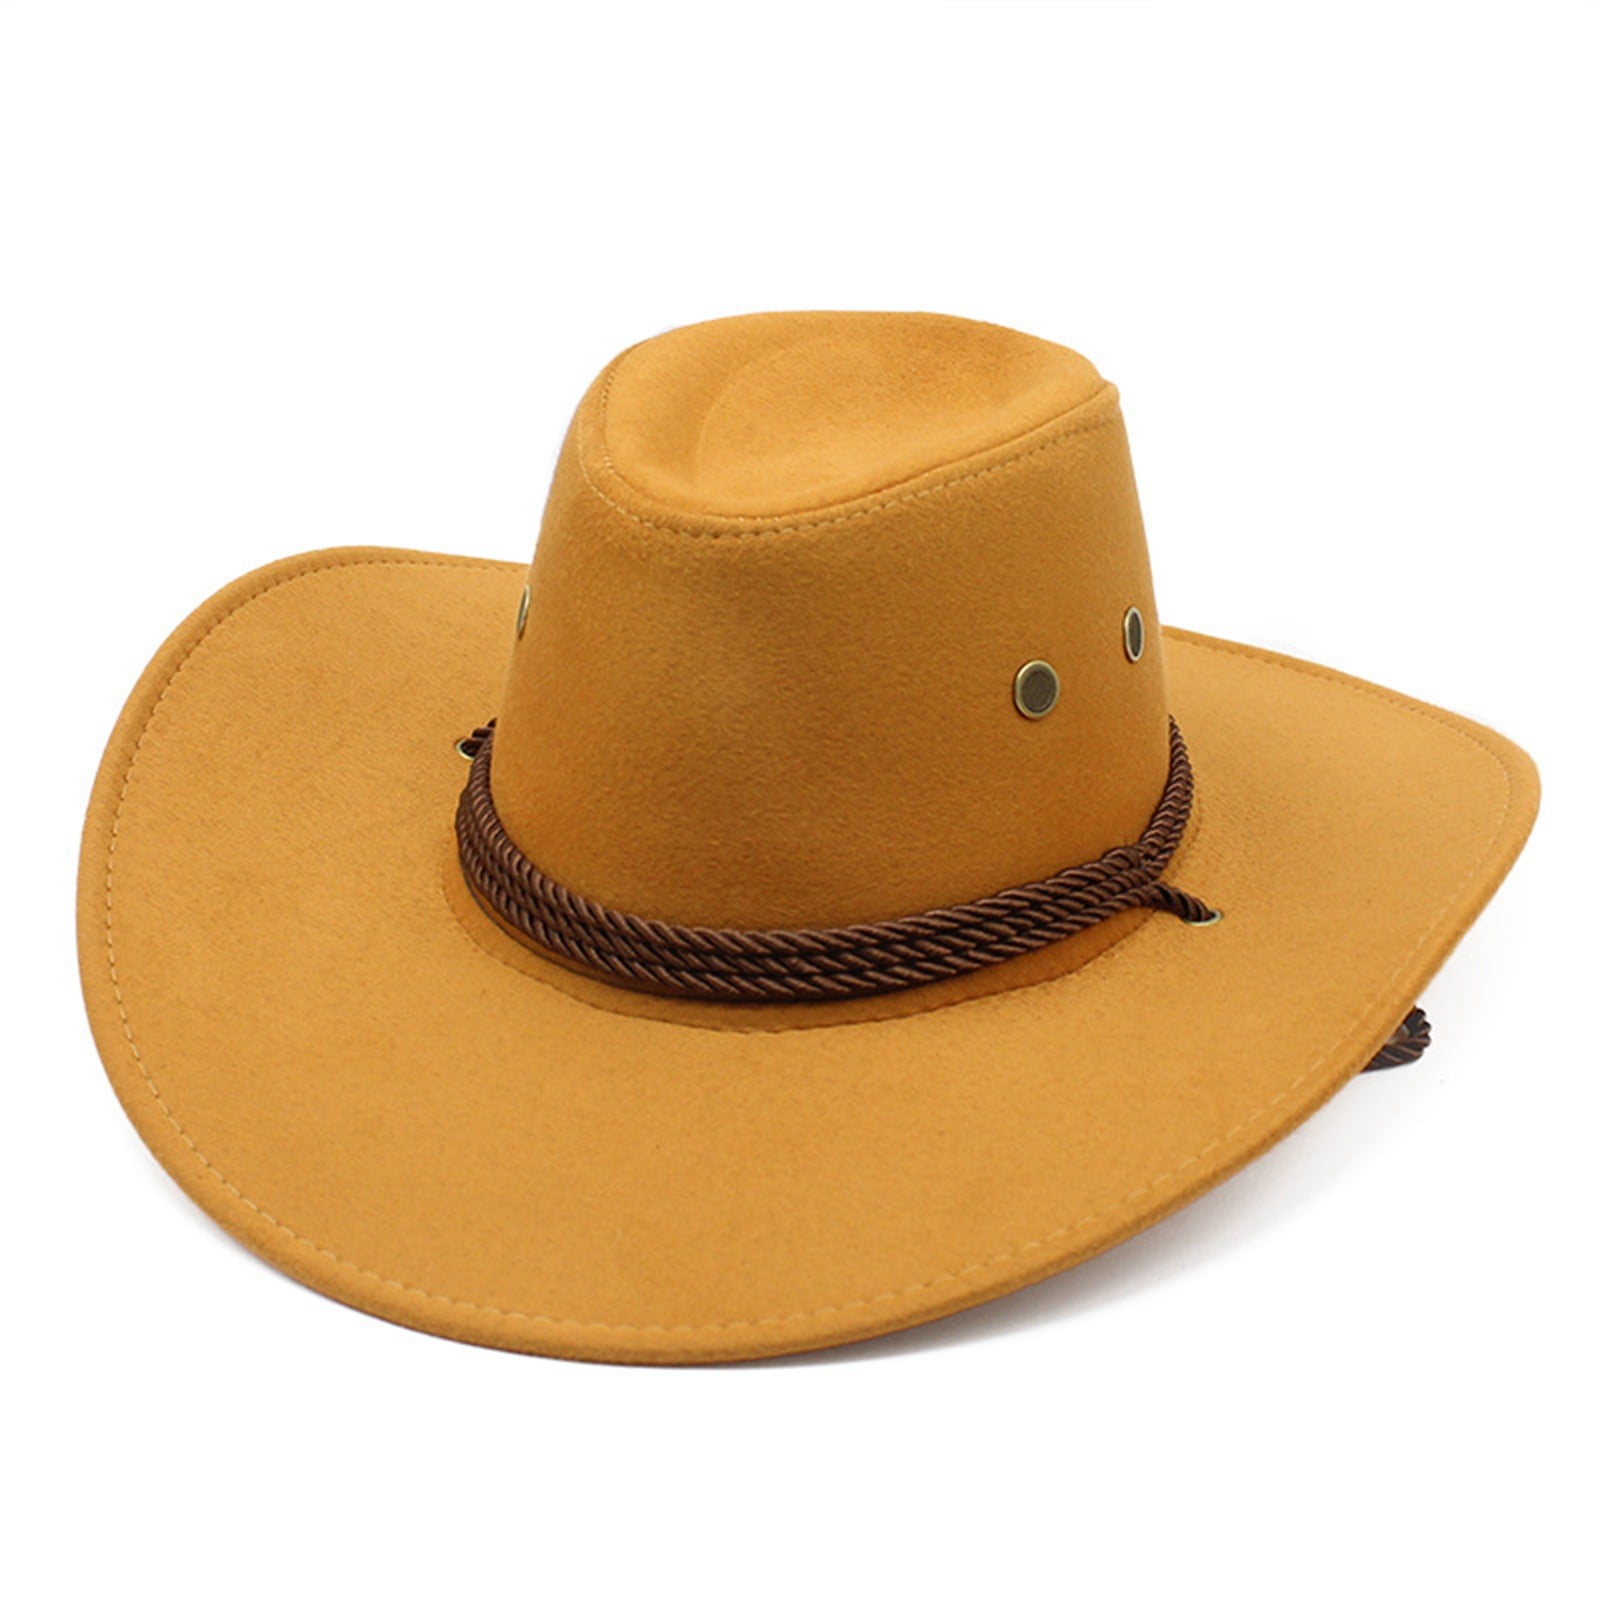 PARITY LIFE Unisex Denim Cowboy Hat, Adult Sunscreen Panama Hat Wide ...